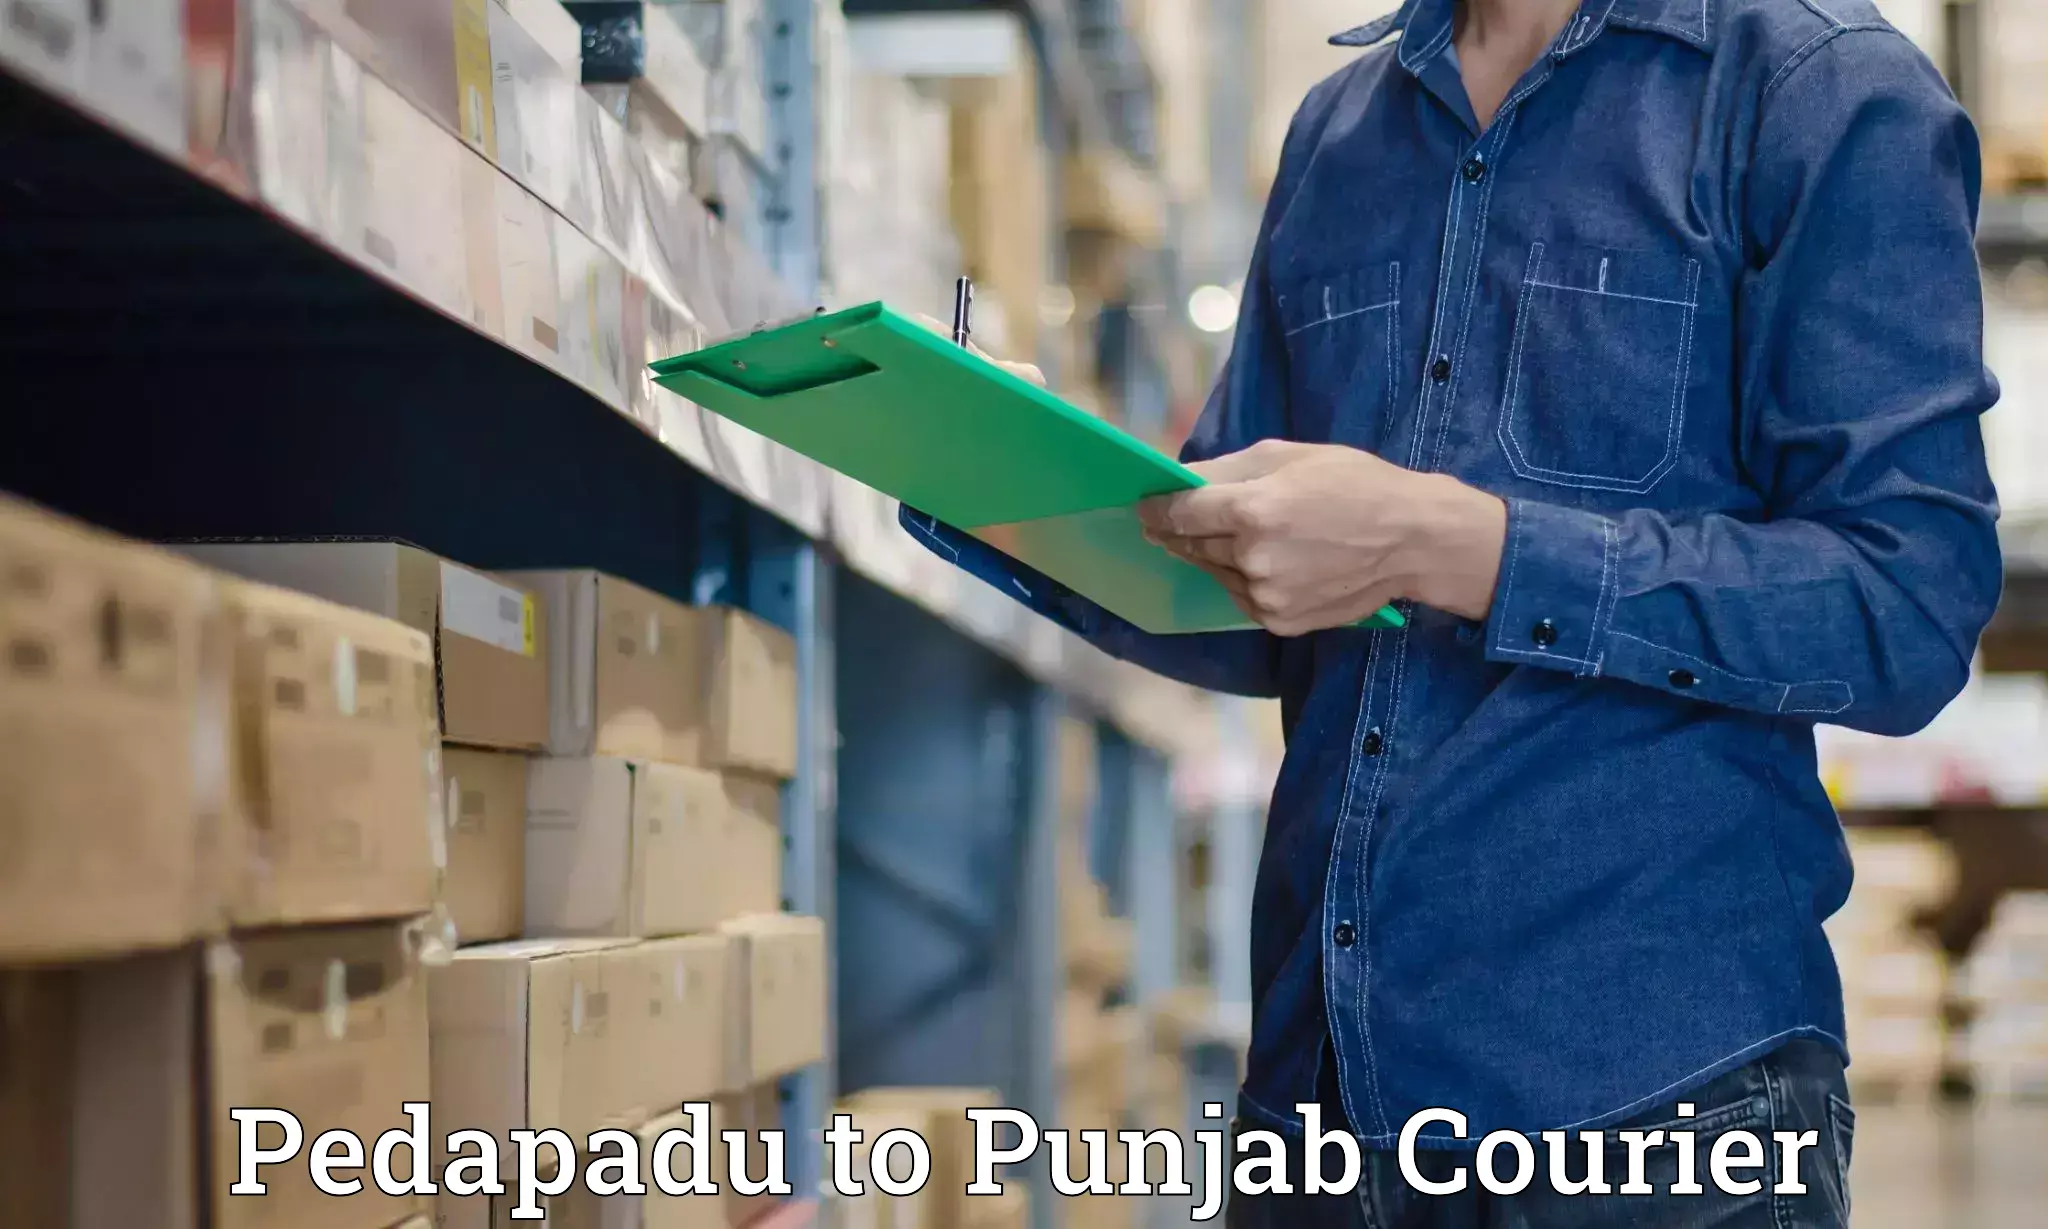 Punctual parcel services Pedapadu to Khanna